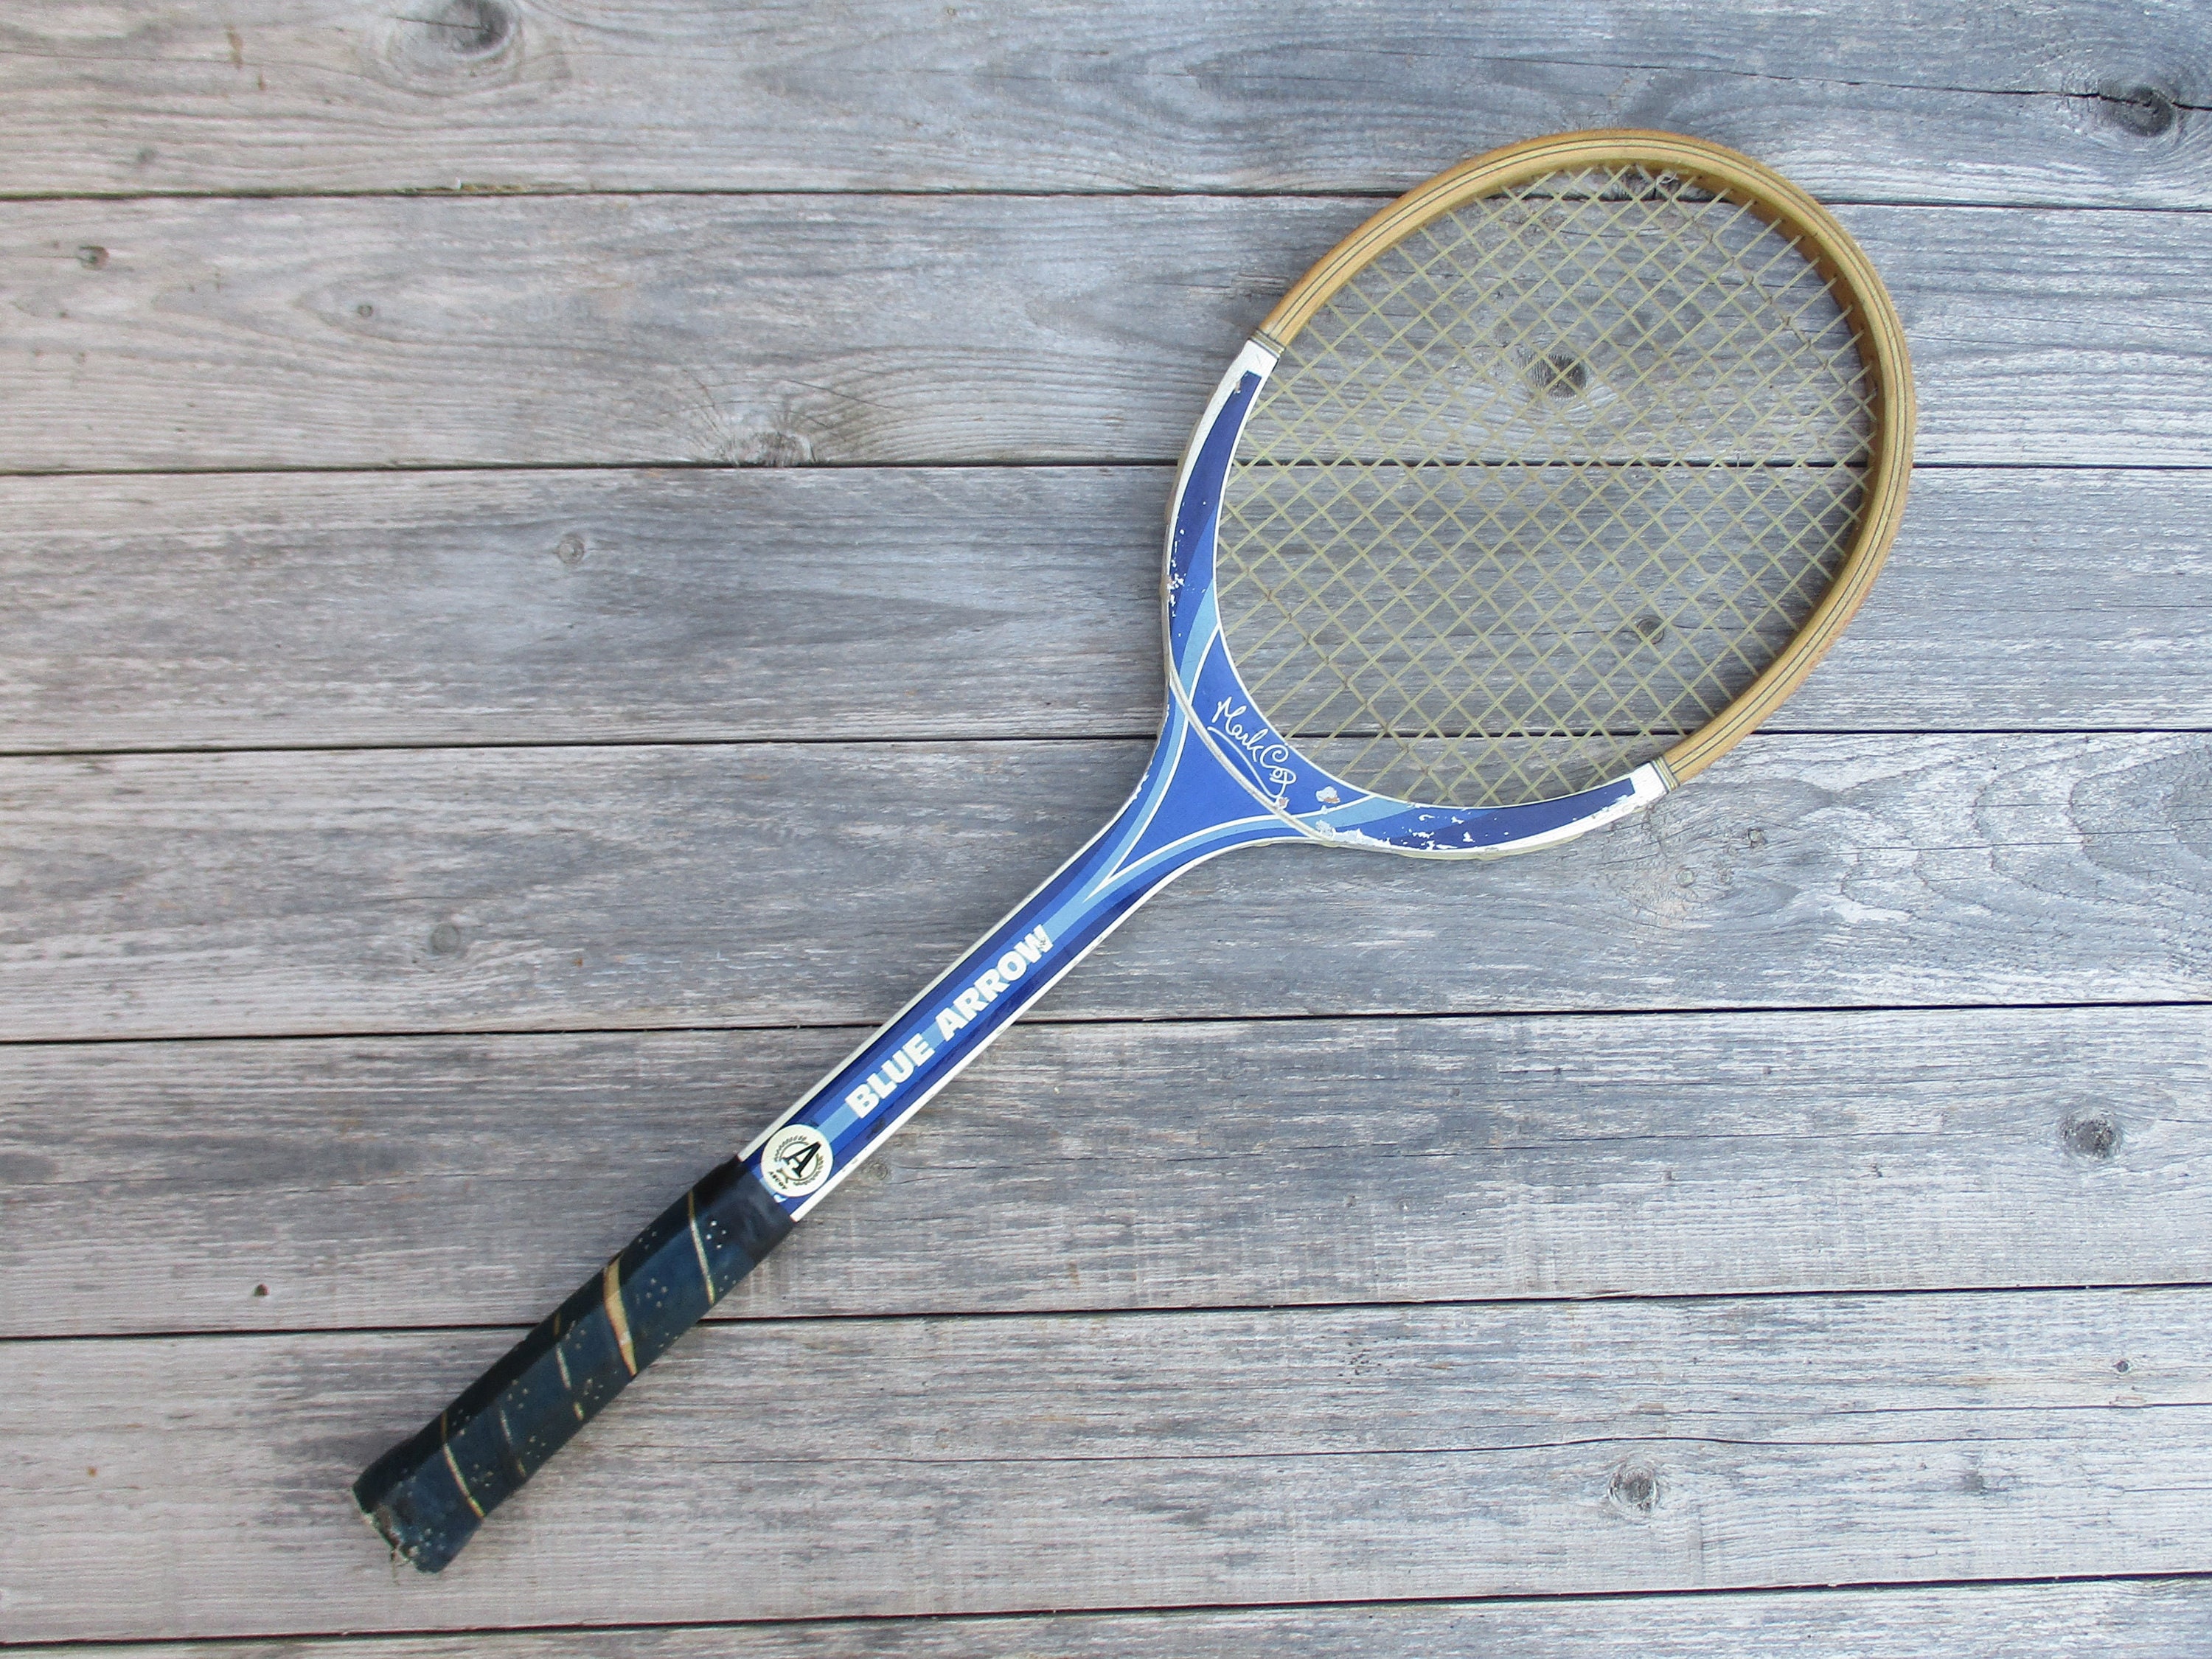 Arrow Mark Cox Vintage Tennis Racket - Etsy